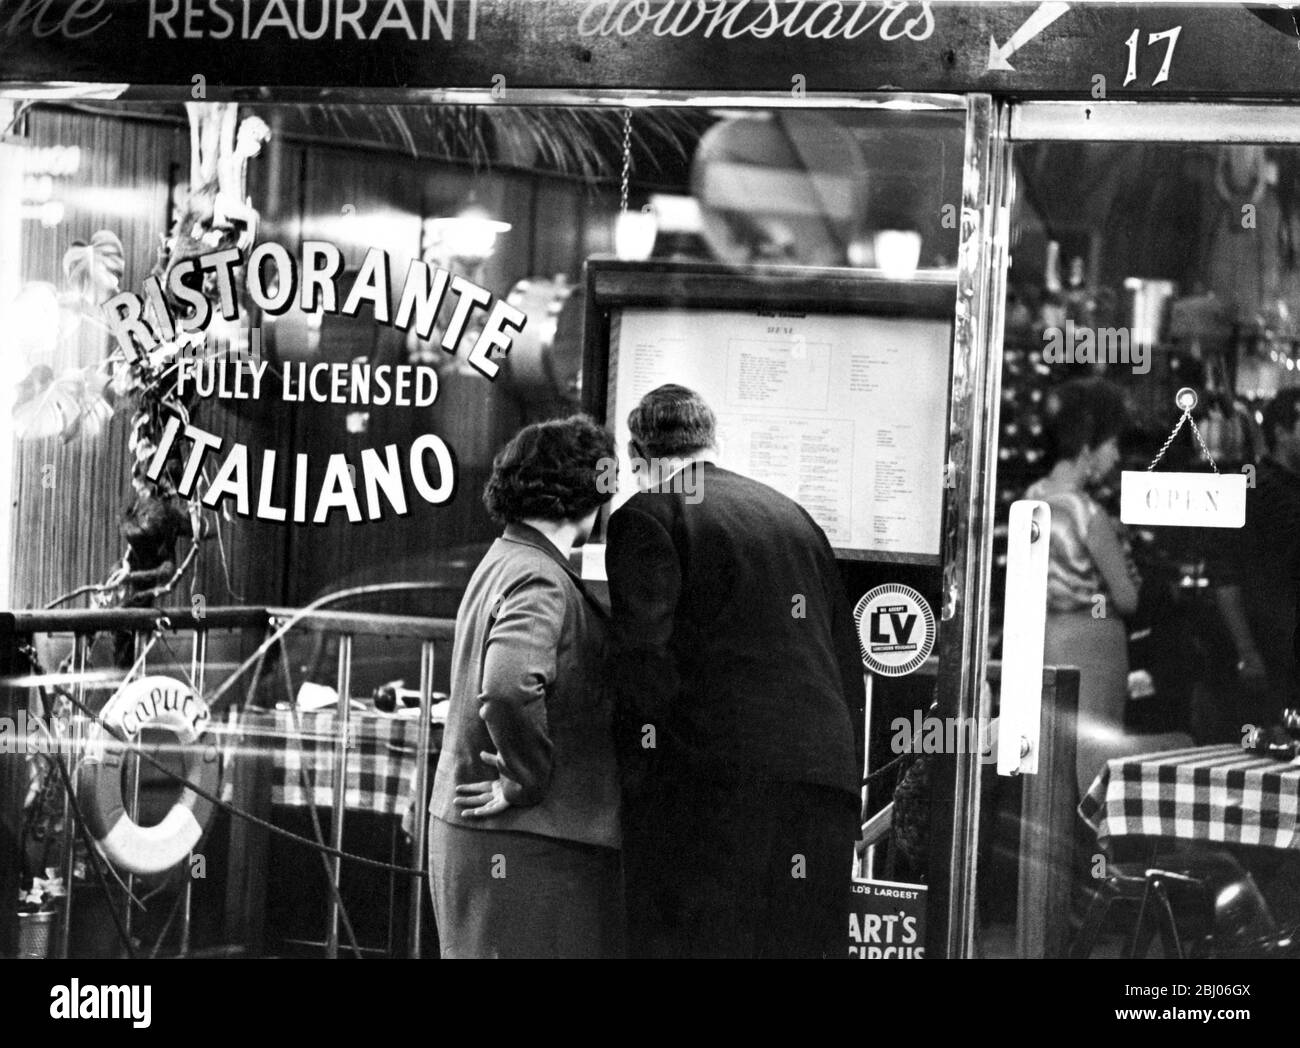 Italienisches Restaurant, außen - Italienisches Restaurant, außen ristorante italiano für einen Artikel in den 1950er Jahren Werden wir zu einer Nation der Feinschmecker? Stockfoto